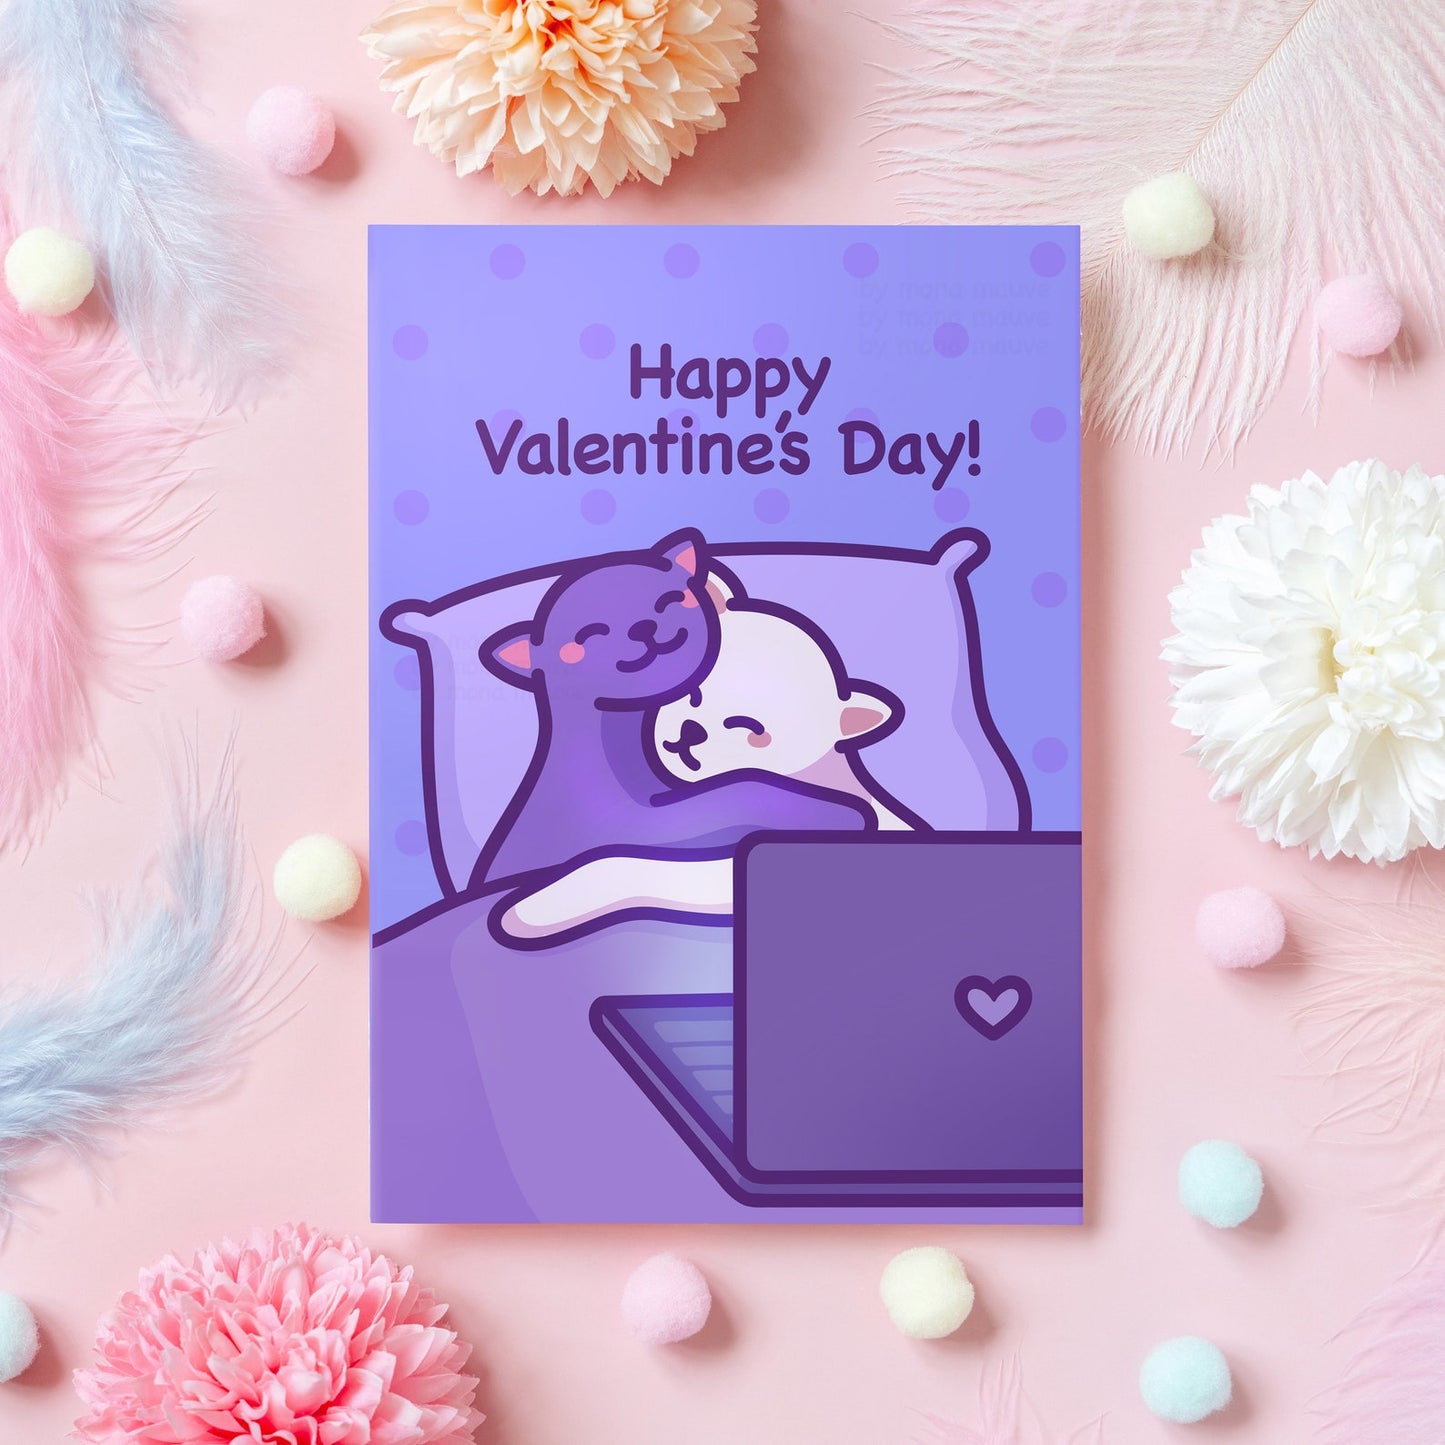 Cute Valentine's Day Card | Happy Valentine's Day! | Cat Hug | Heartfelt Gift For Husband, Wife, Boyfriend, Girlfriend, Partner, Her, Him